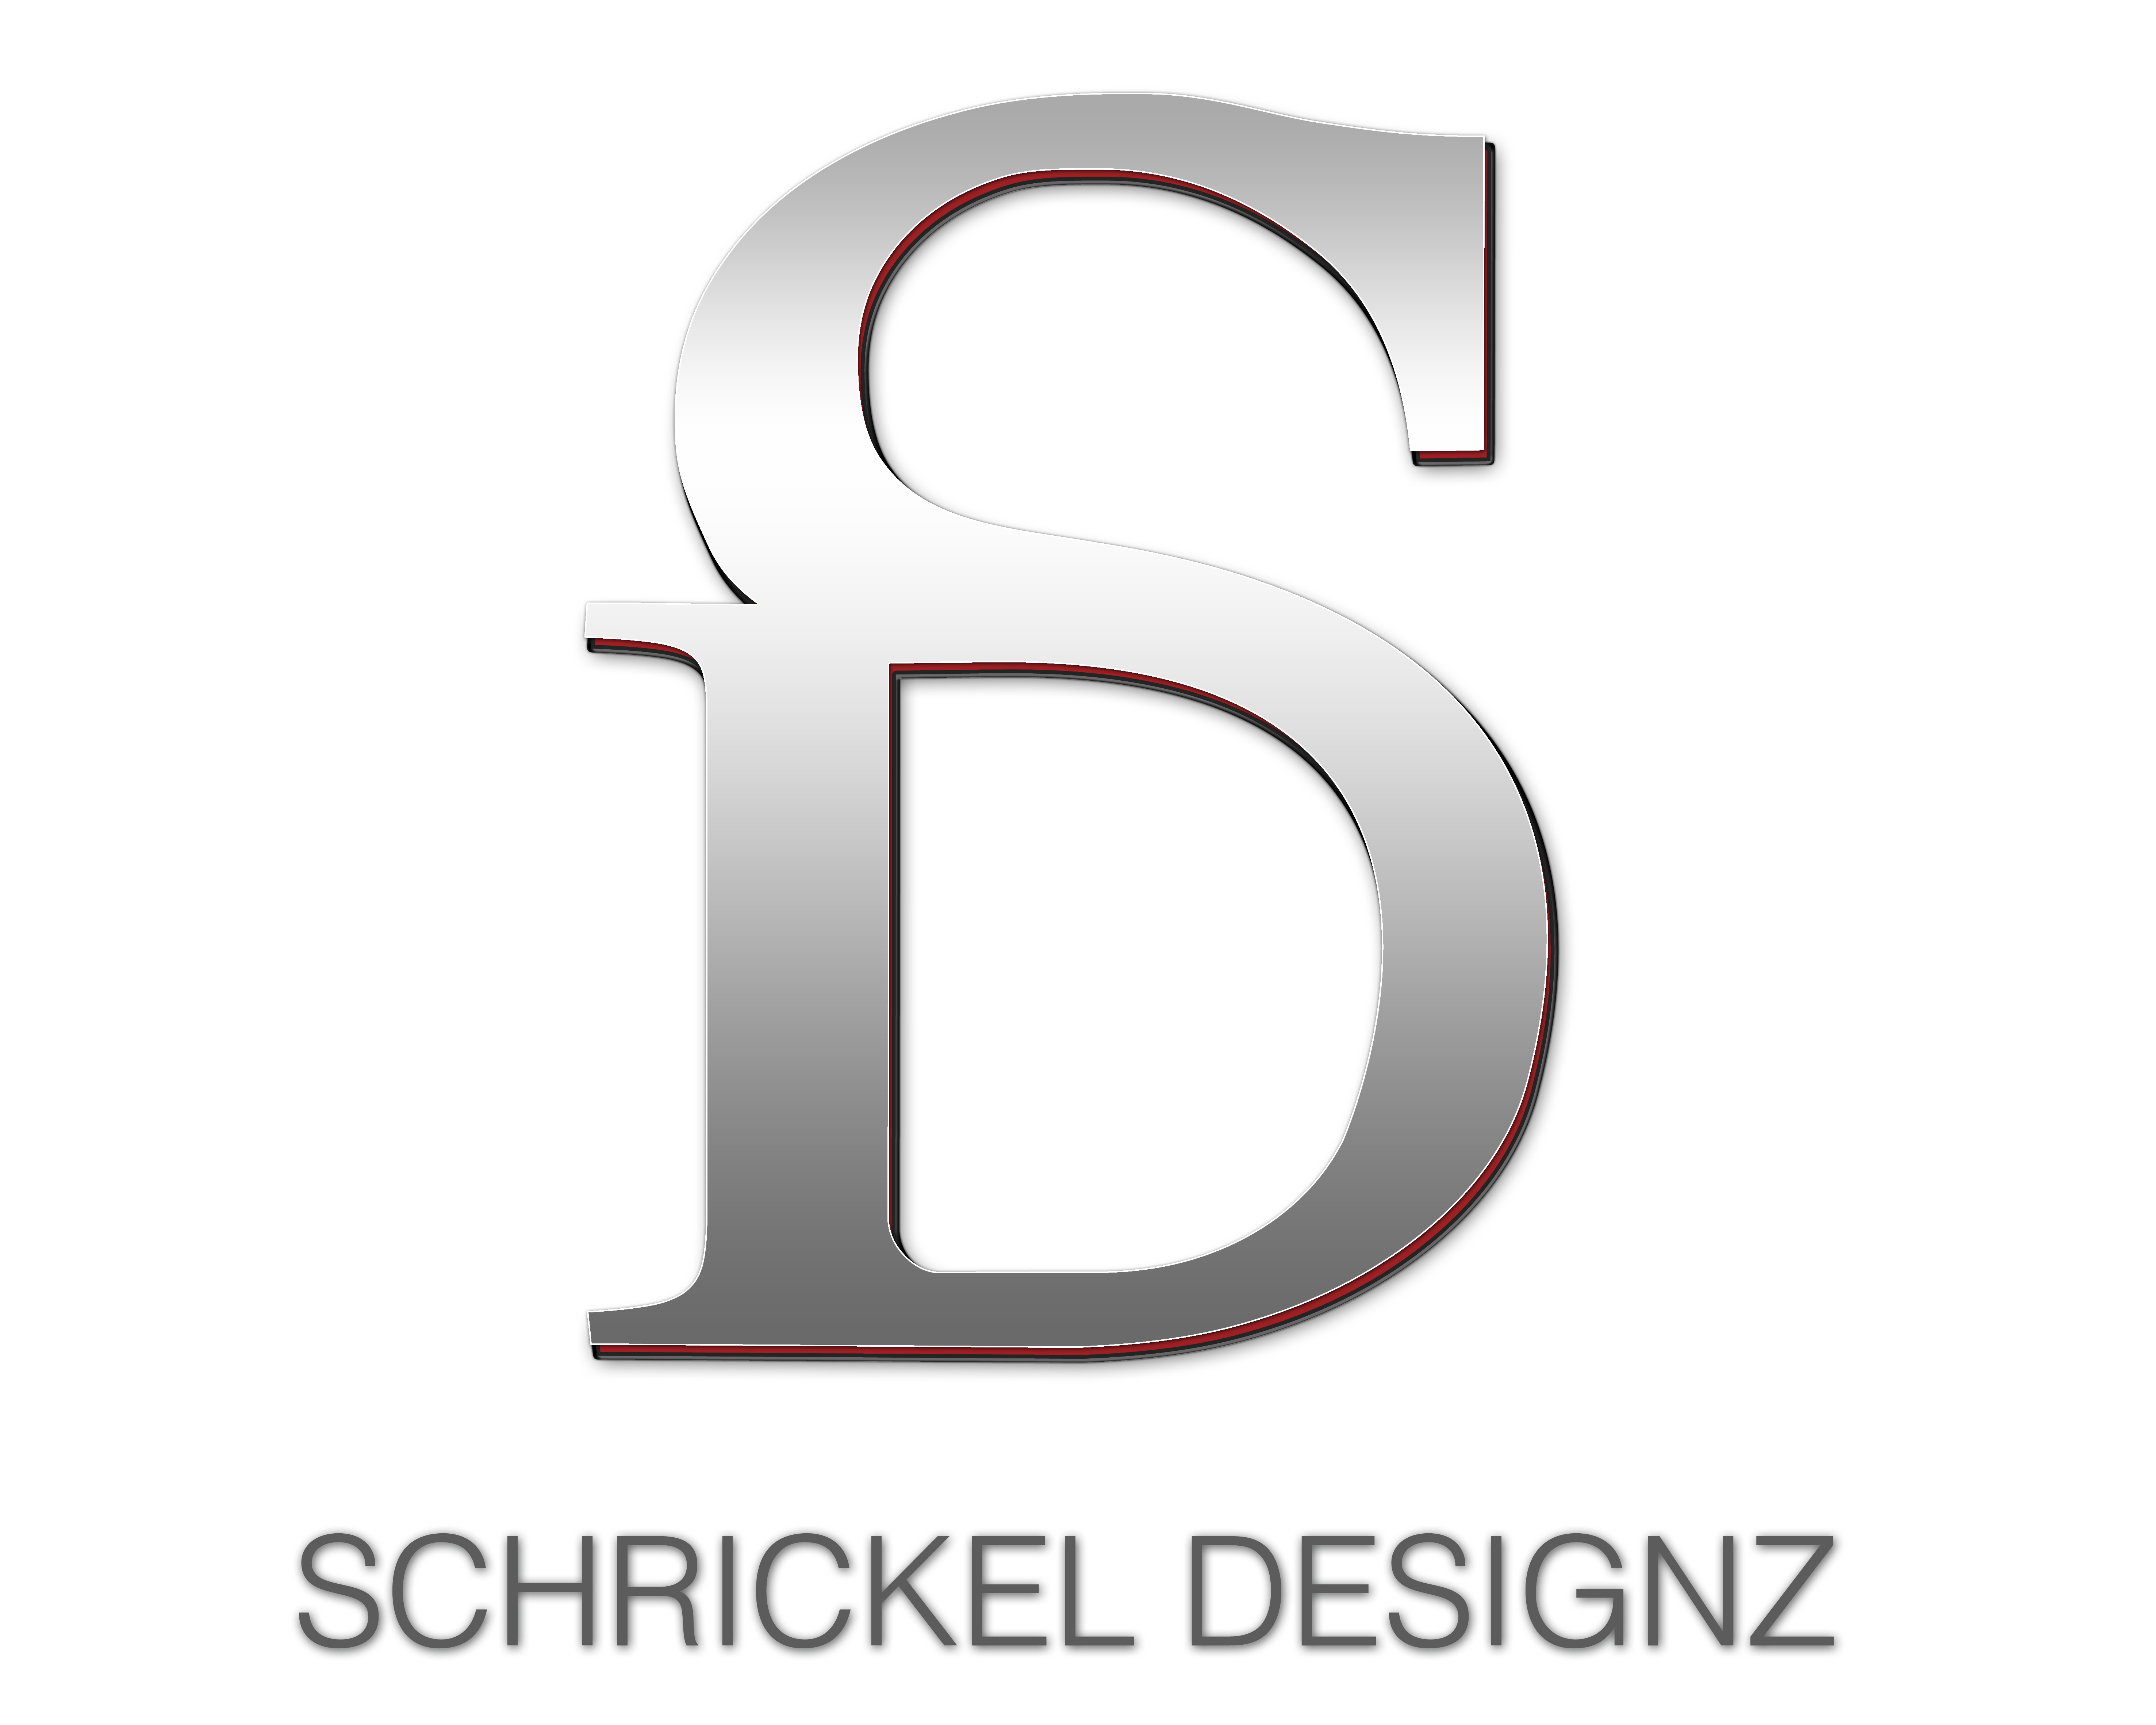 Schrickel-Designz